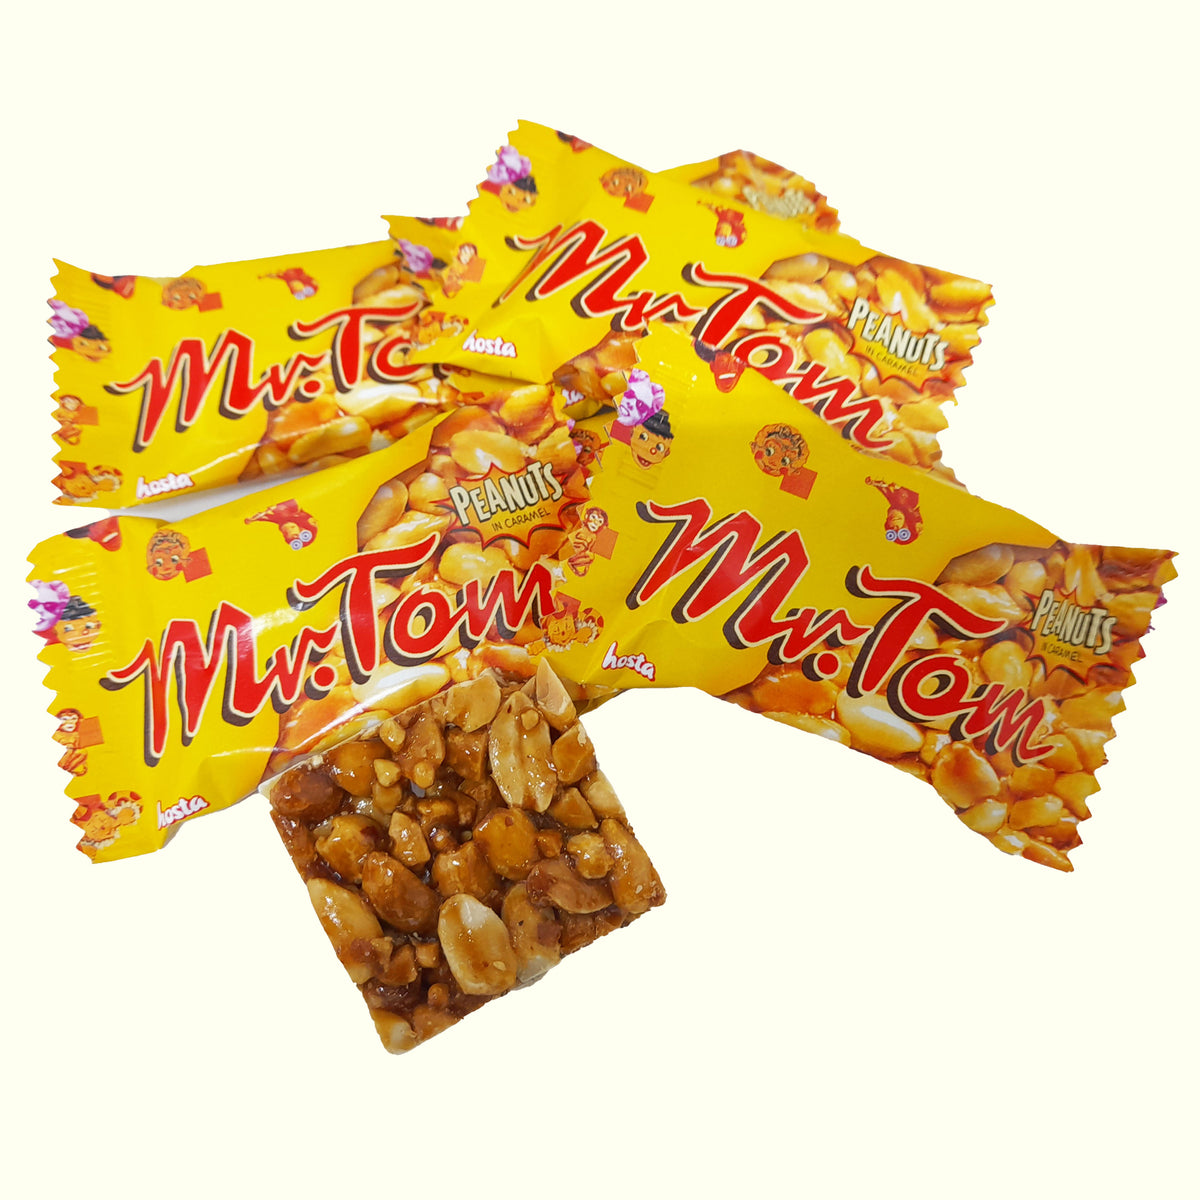 Mr.Tom Minis Geröstete Erdnüsse in Karamell 200g